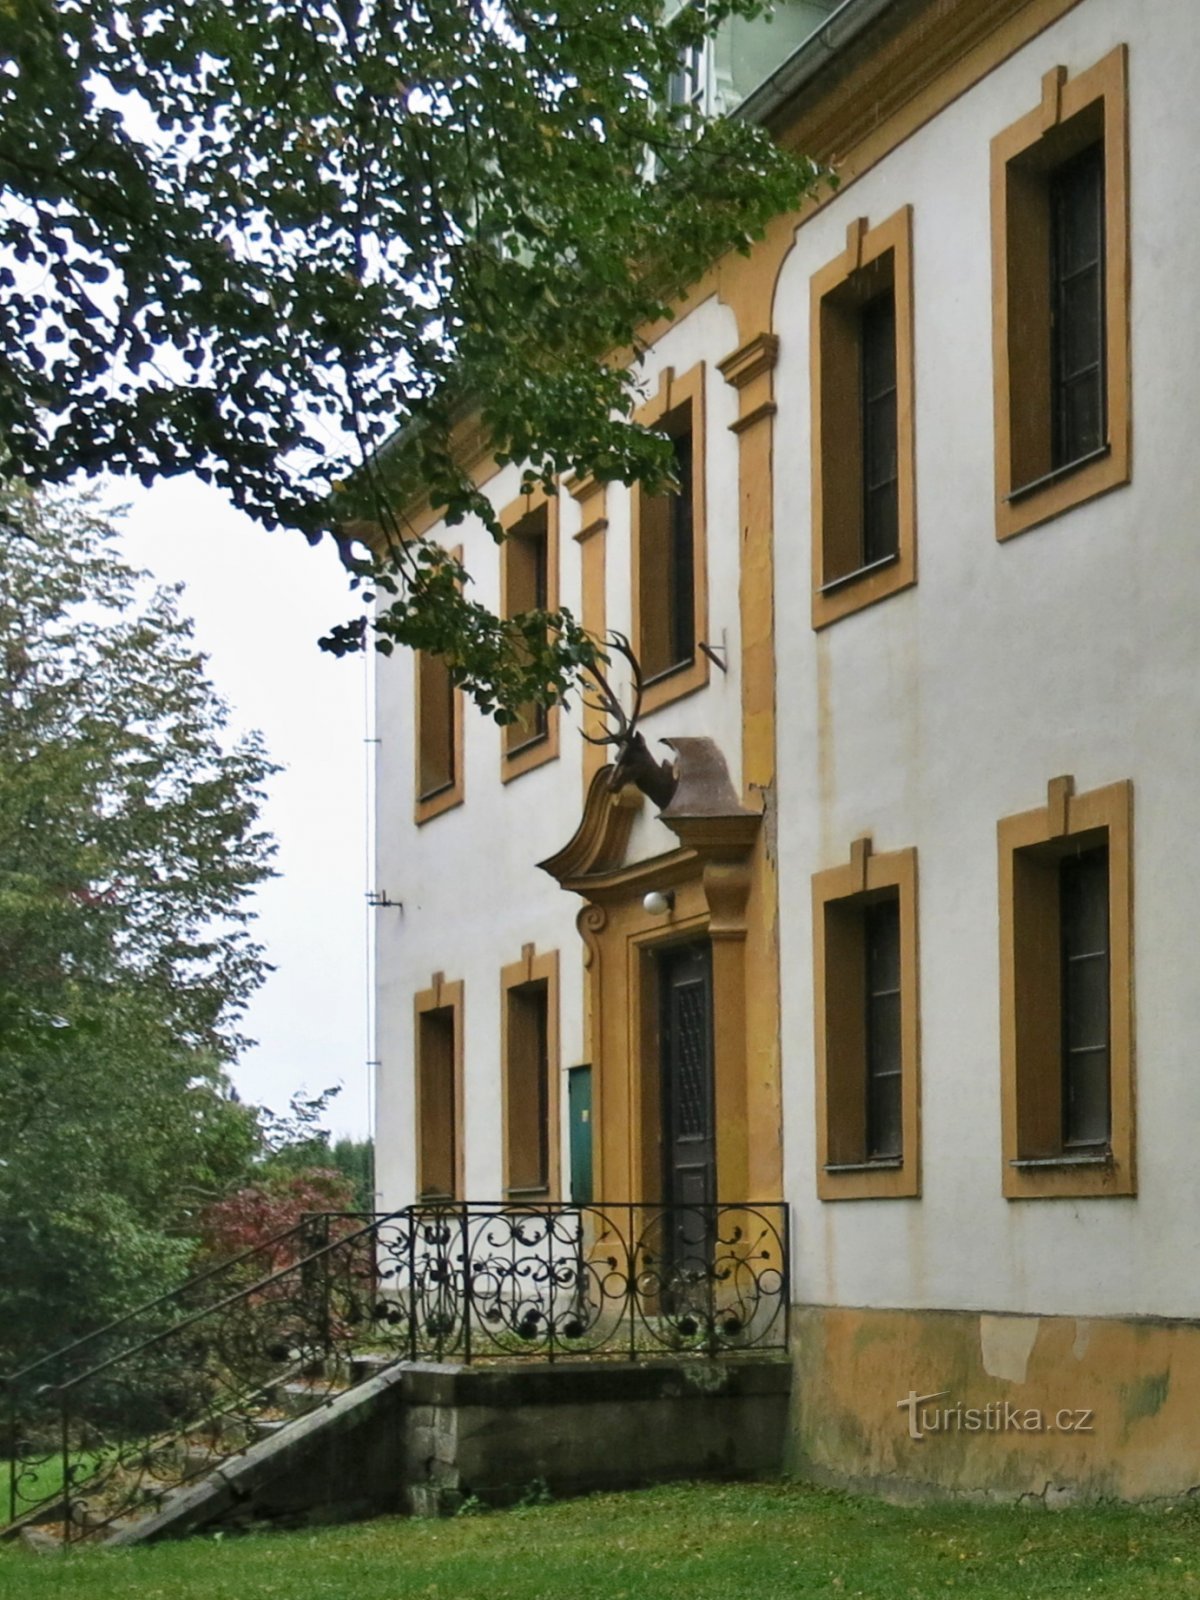 Bouzov - Jägerhaus erdészet